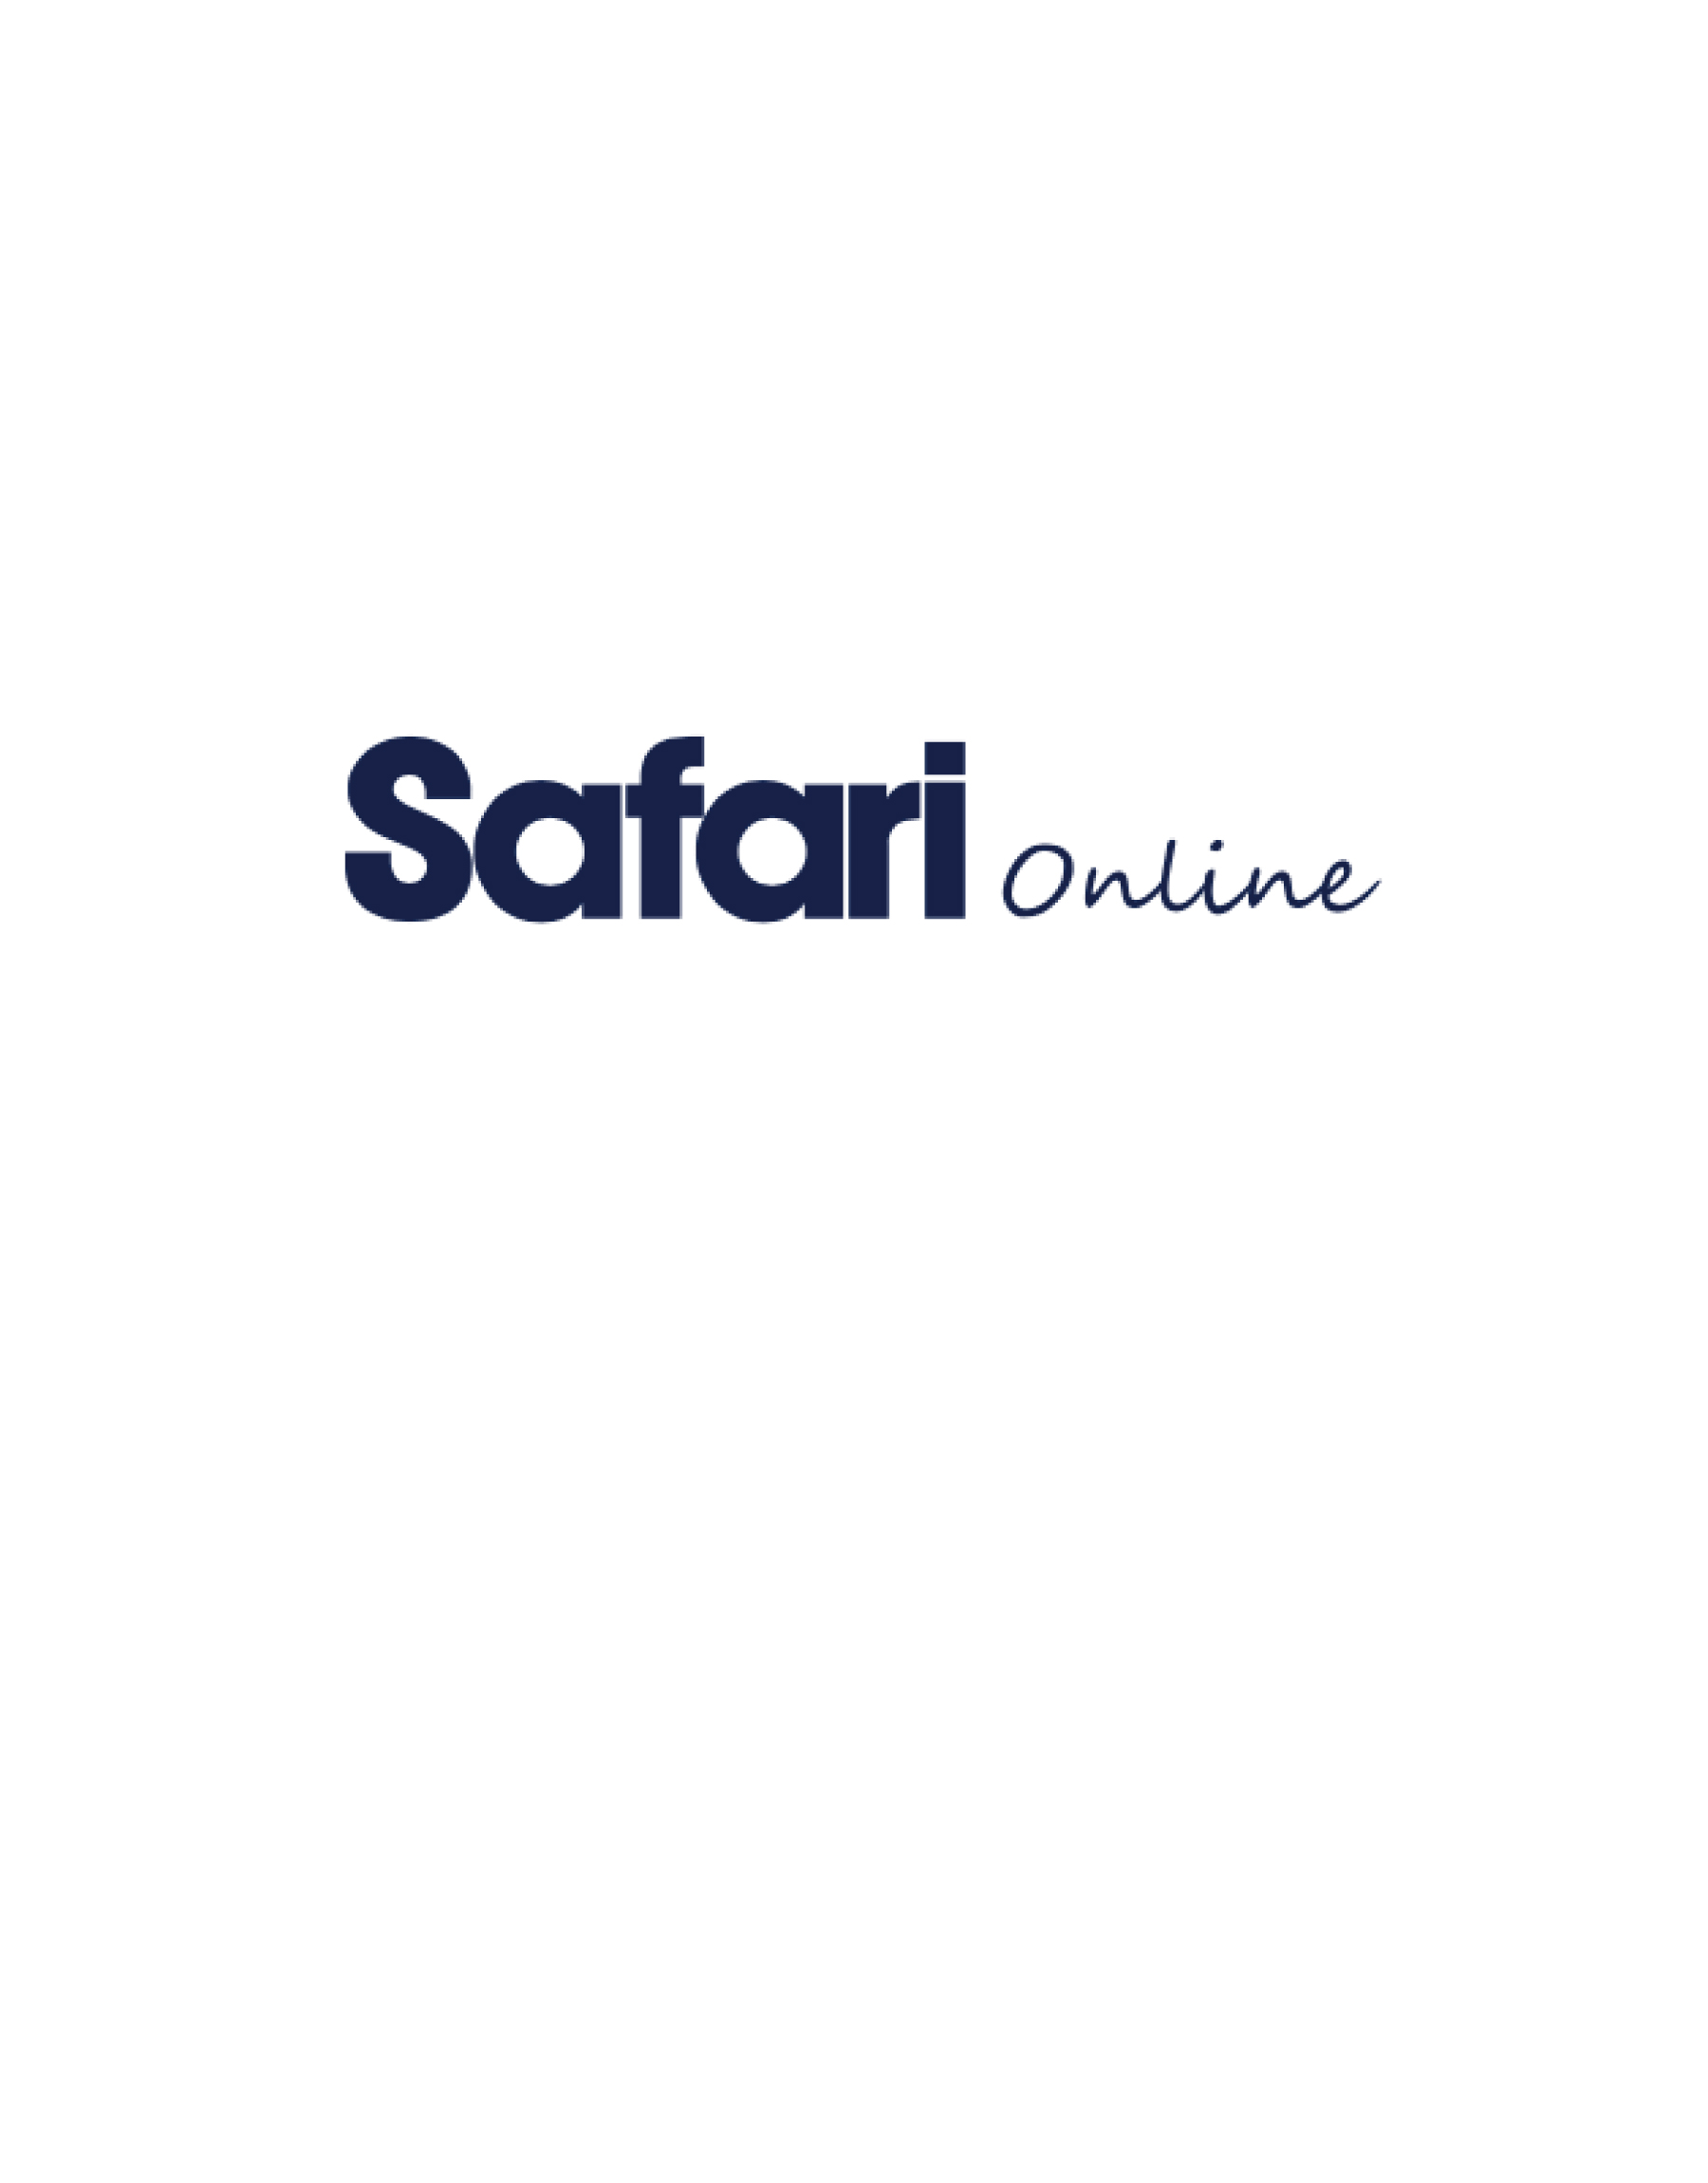 Safari Online Eyevan 7285